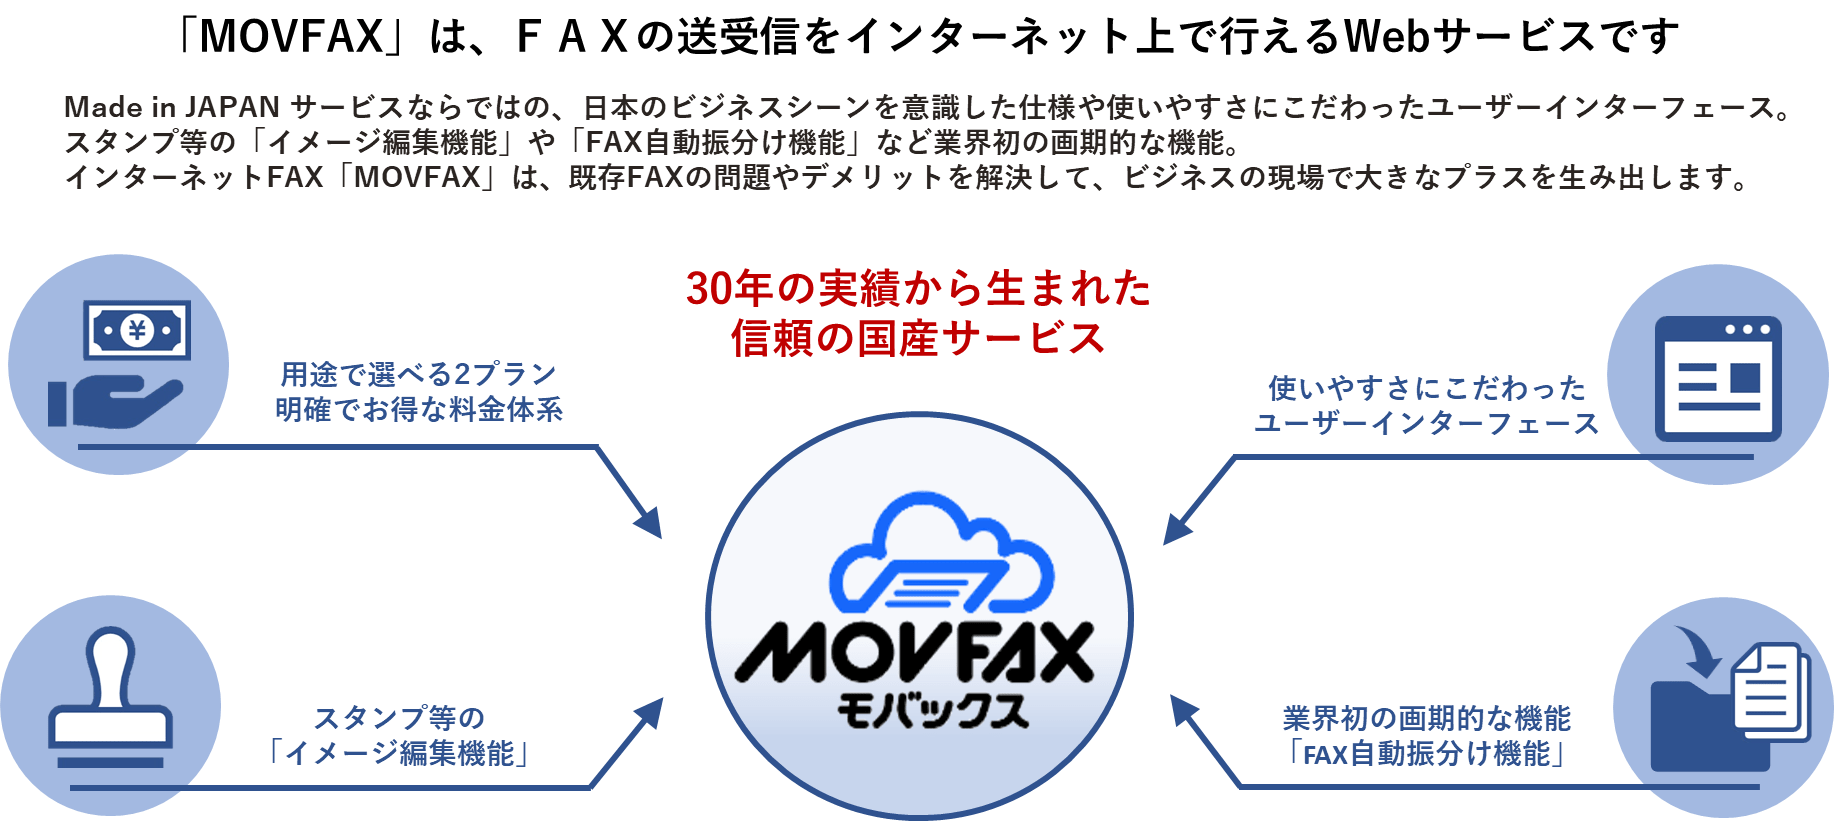 MOVFAX（モバックス）は国産のインターネットFAXサービスです。FAXの送受信を、事務機器なしにスマホやパソコン上で行うことが出来ます。